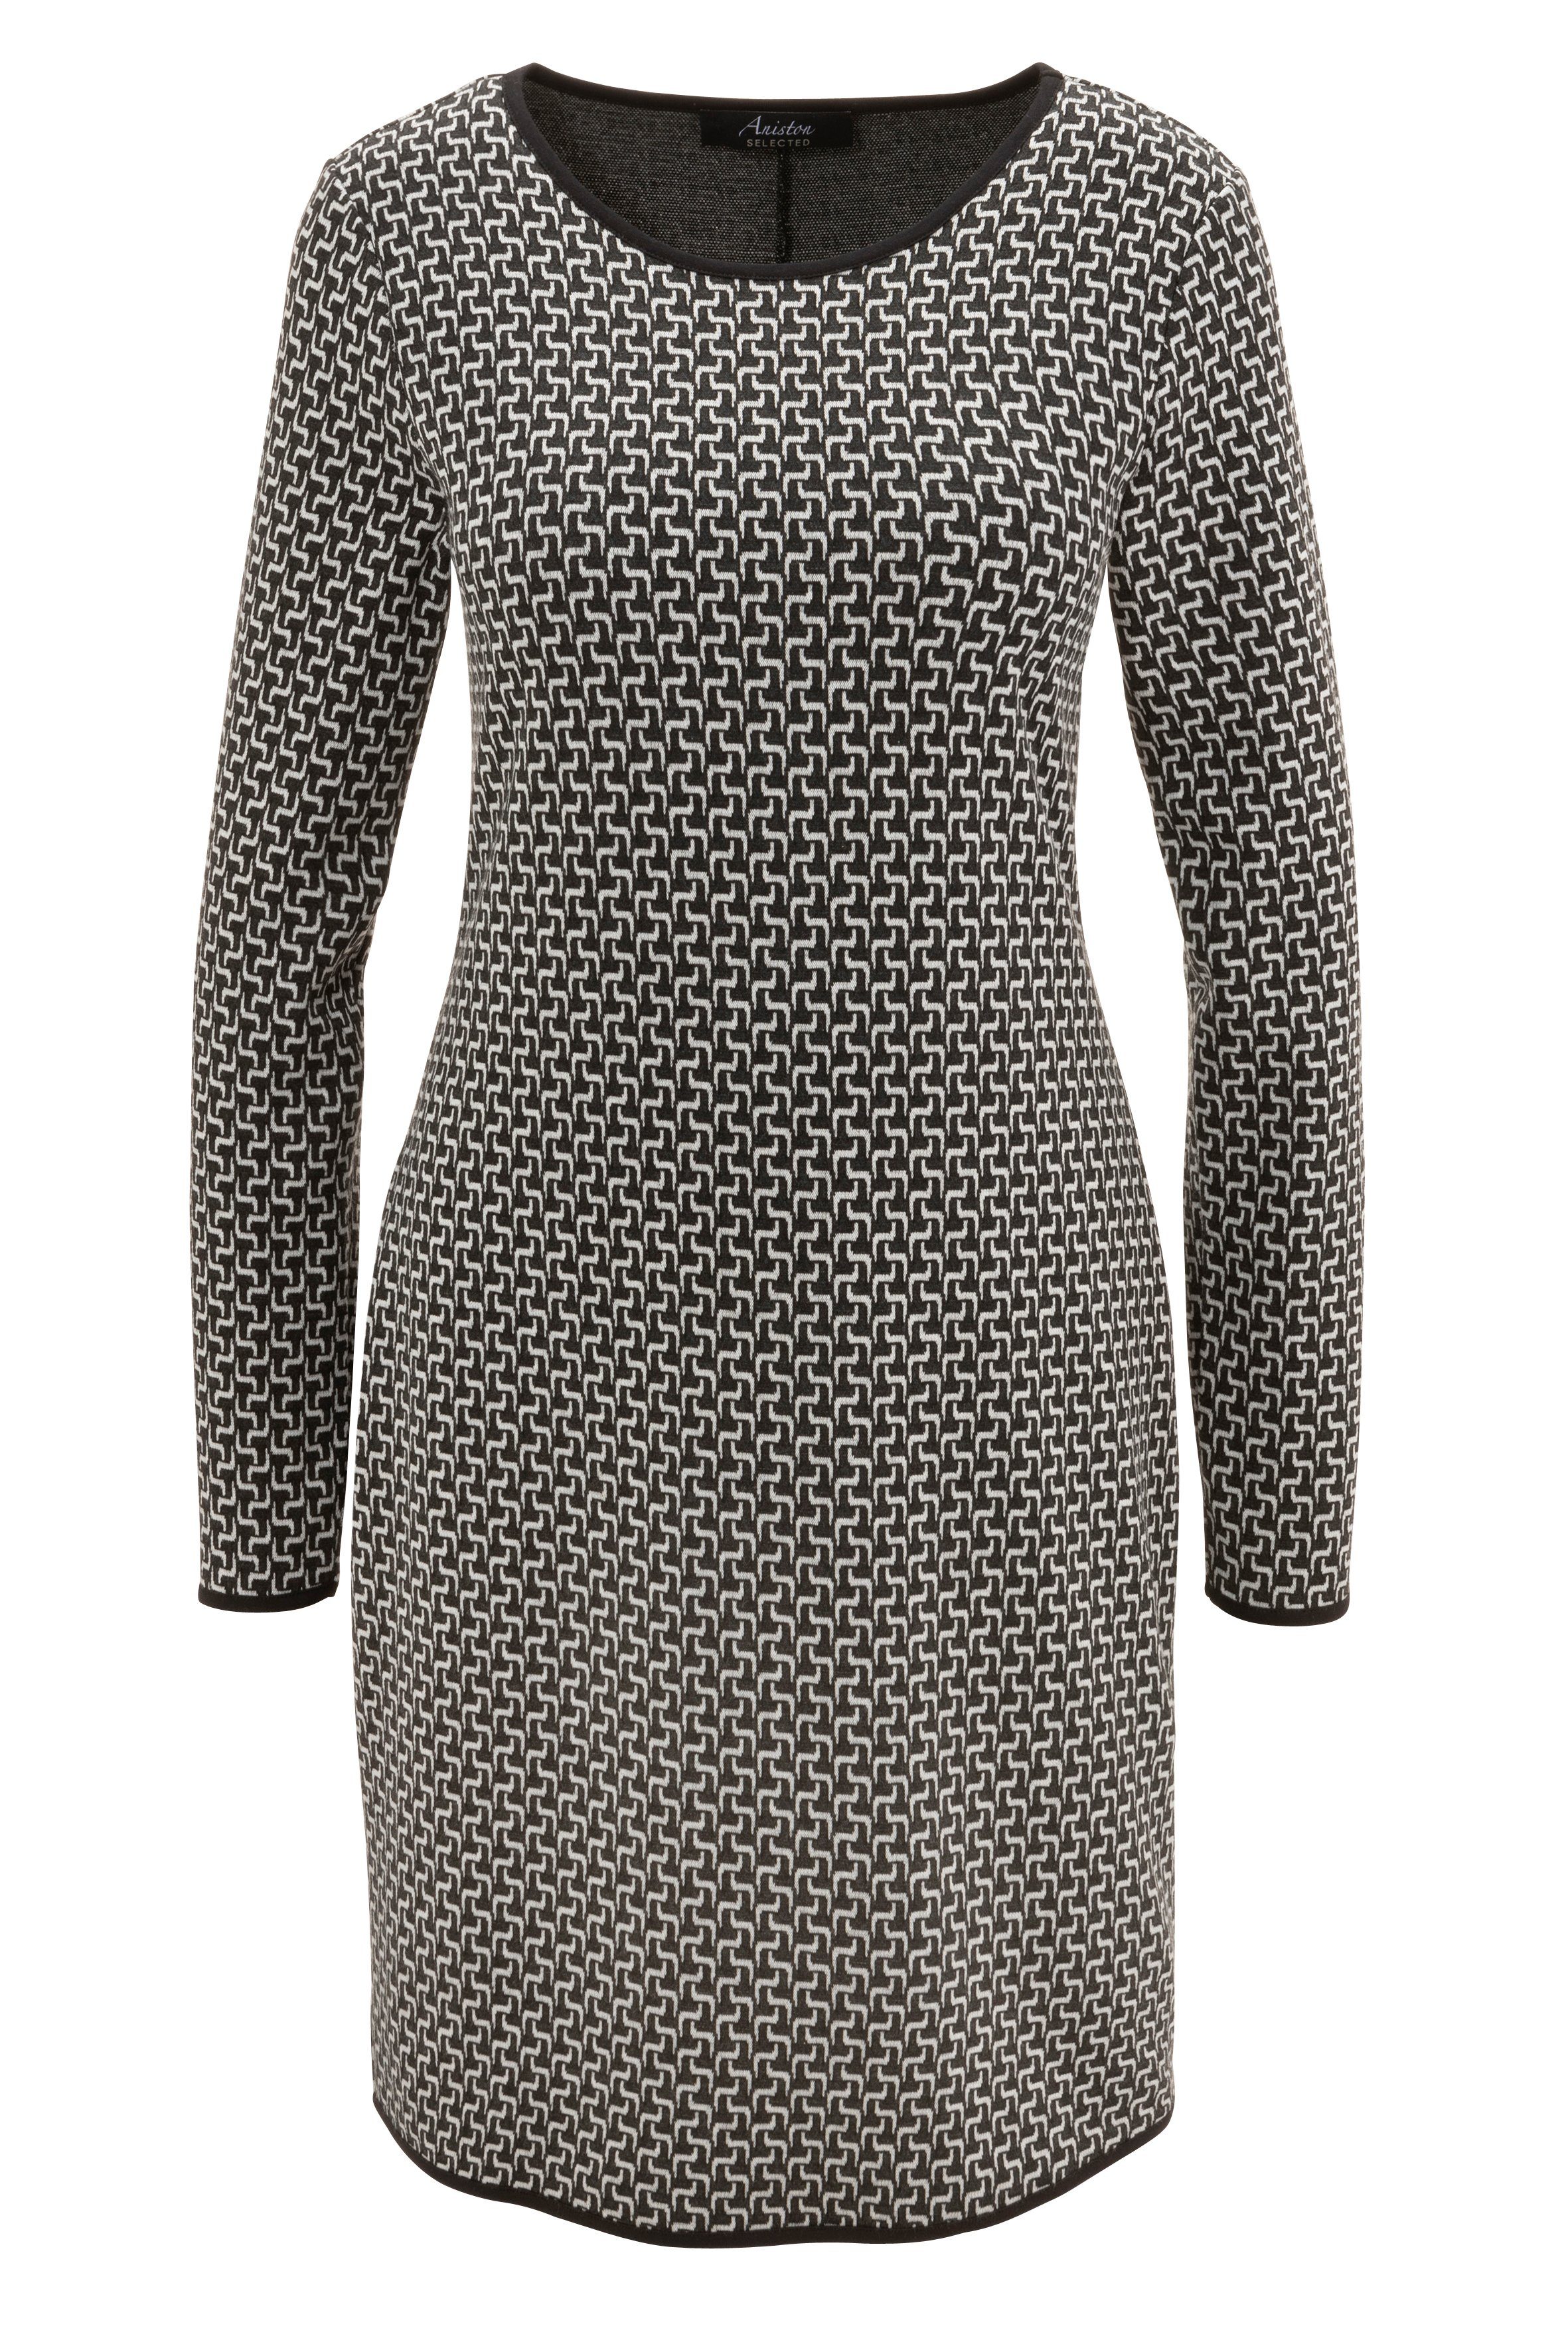 Aniston SELECTED Jerseykleid mit schwarzen Abschlüssen Allover-Muster und